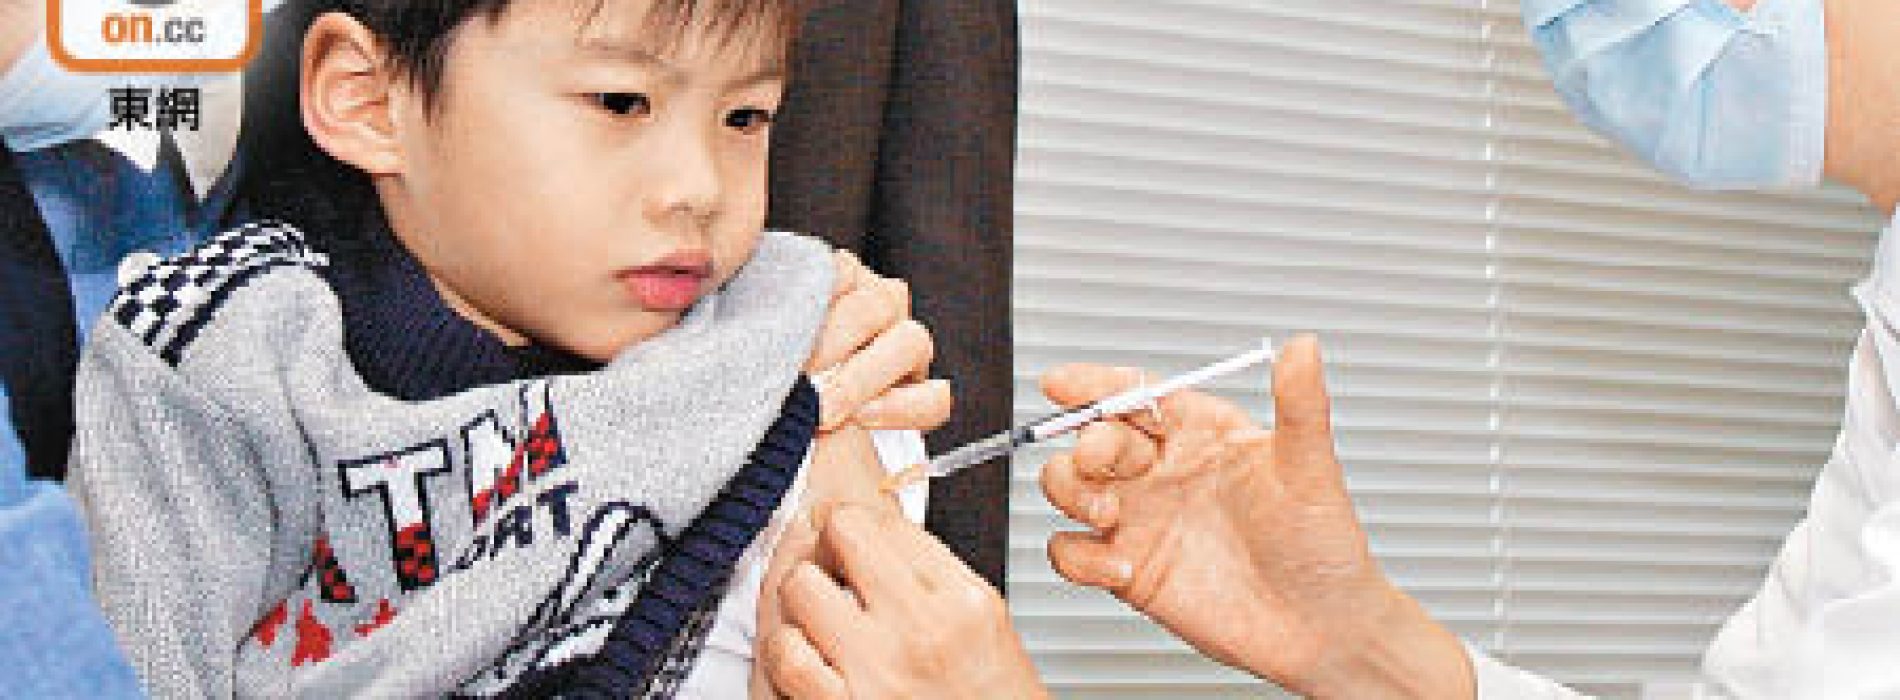 兒童流感疫苗資助擬擴至全港小學生